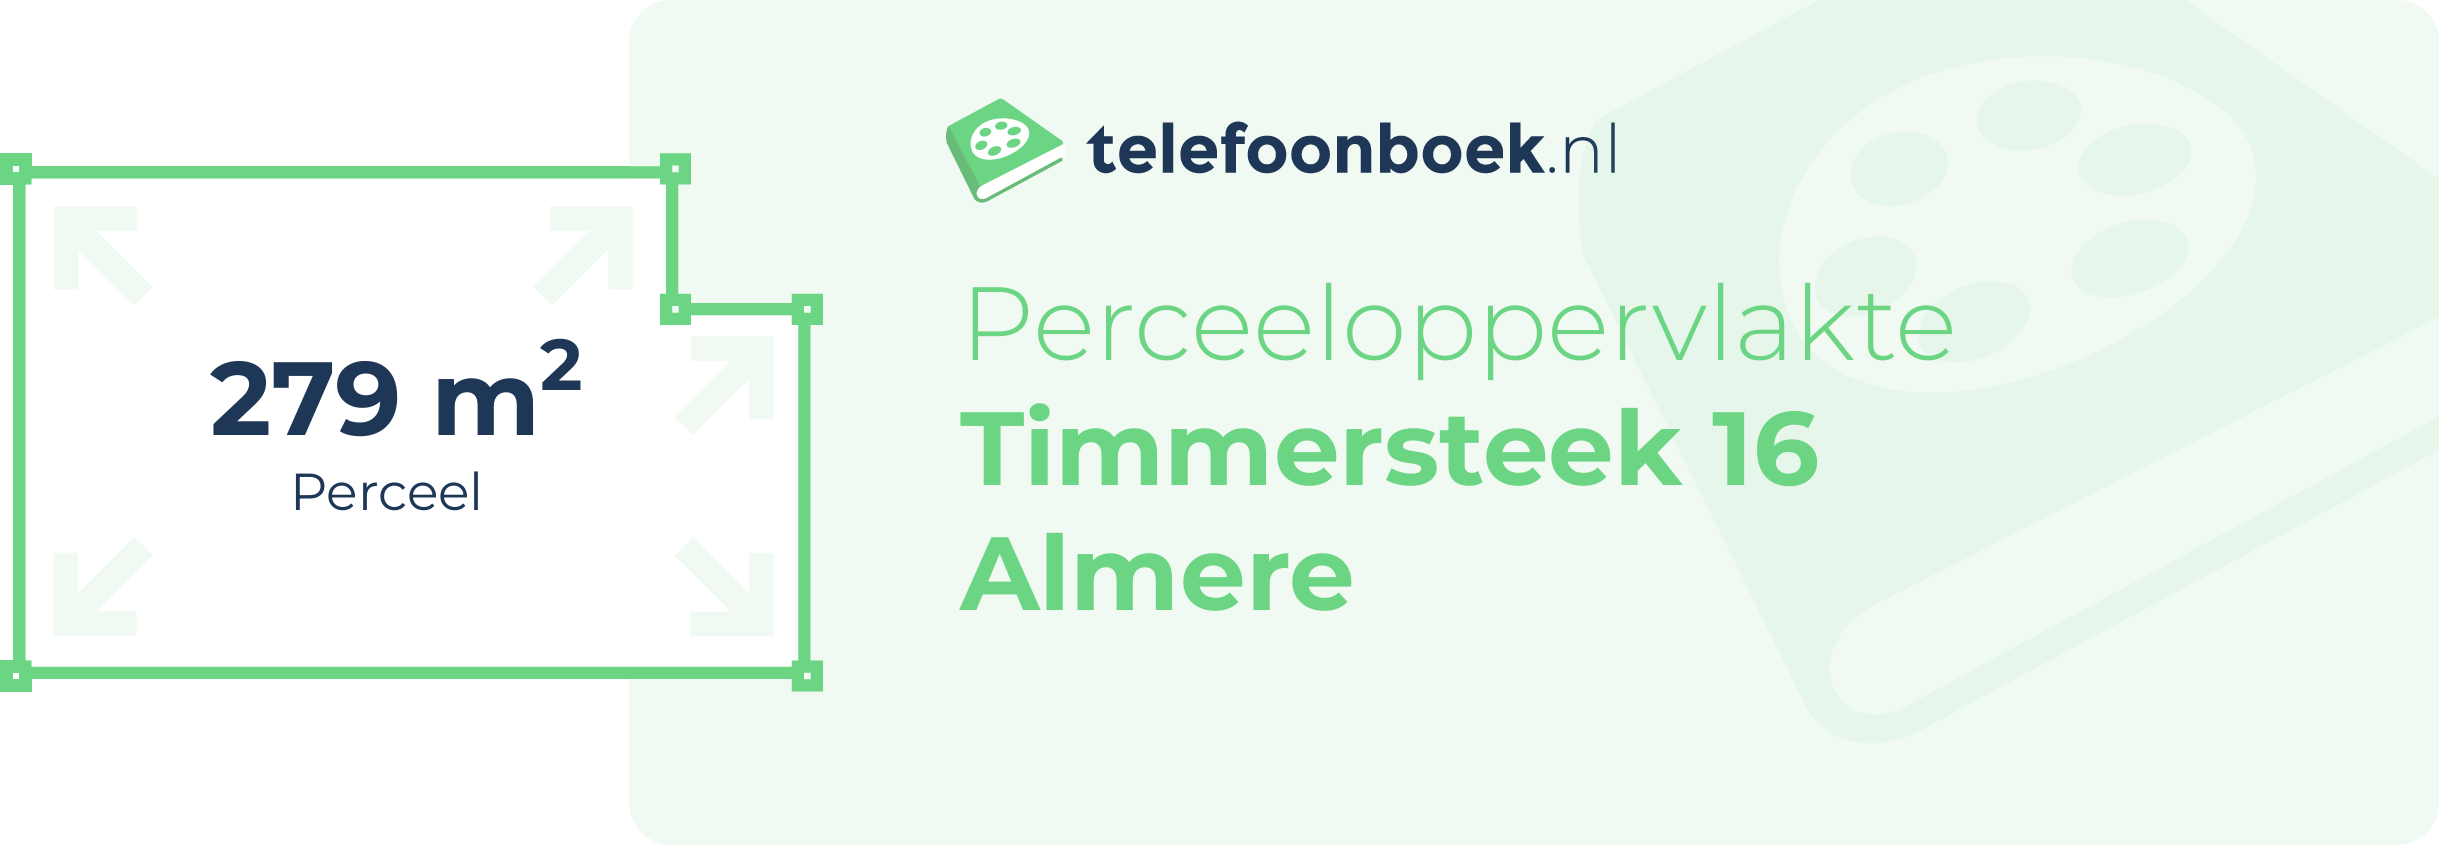 Perceeloppervlakte Timmersteek 16 Almere